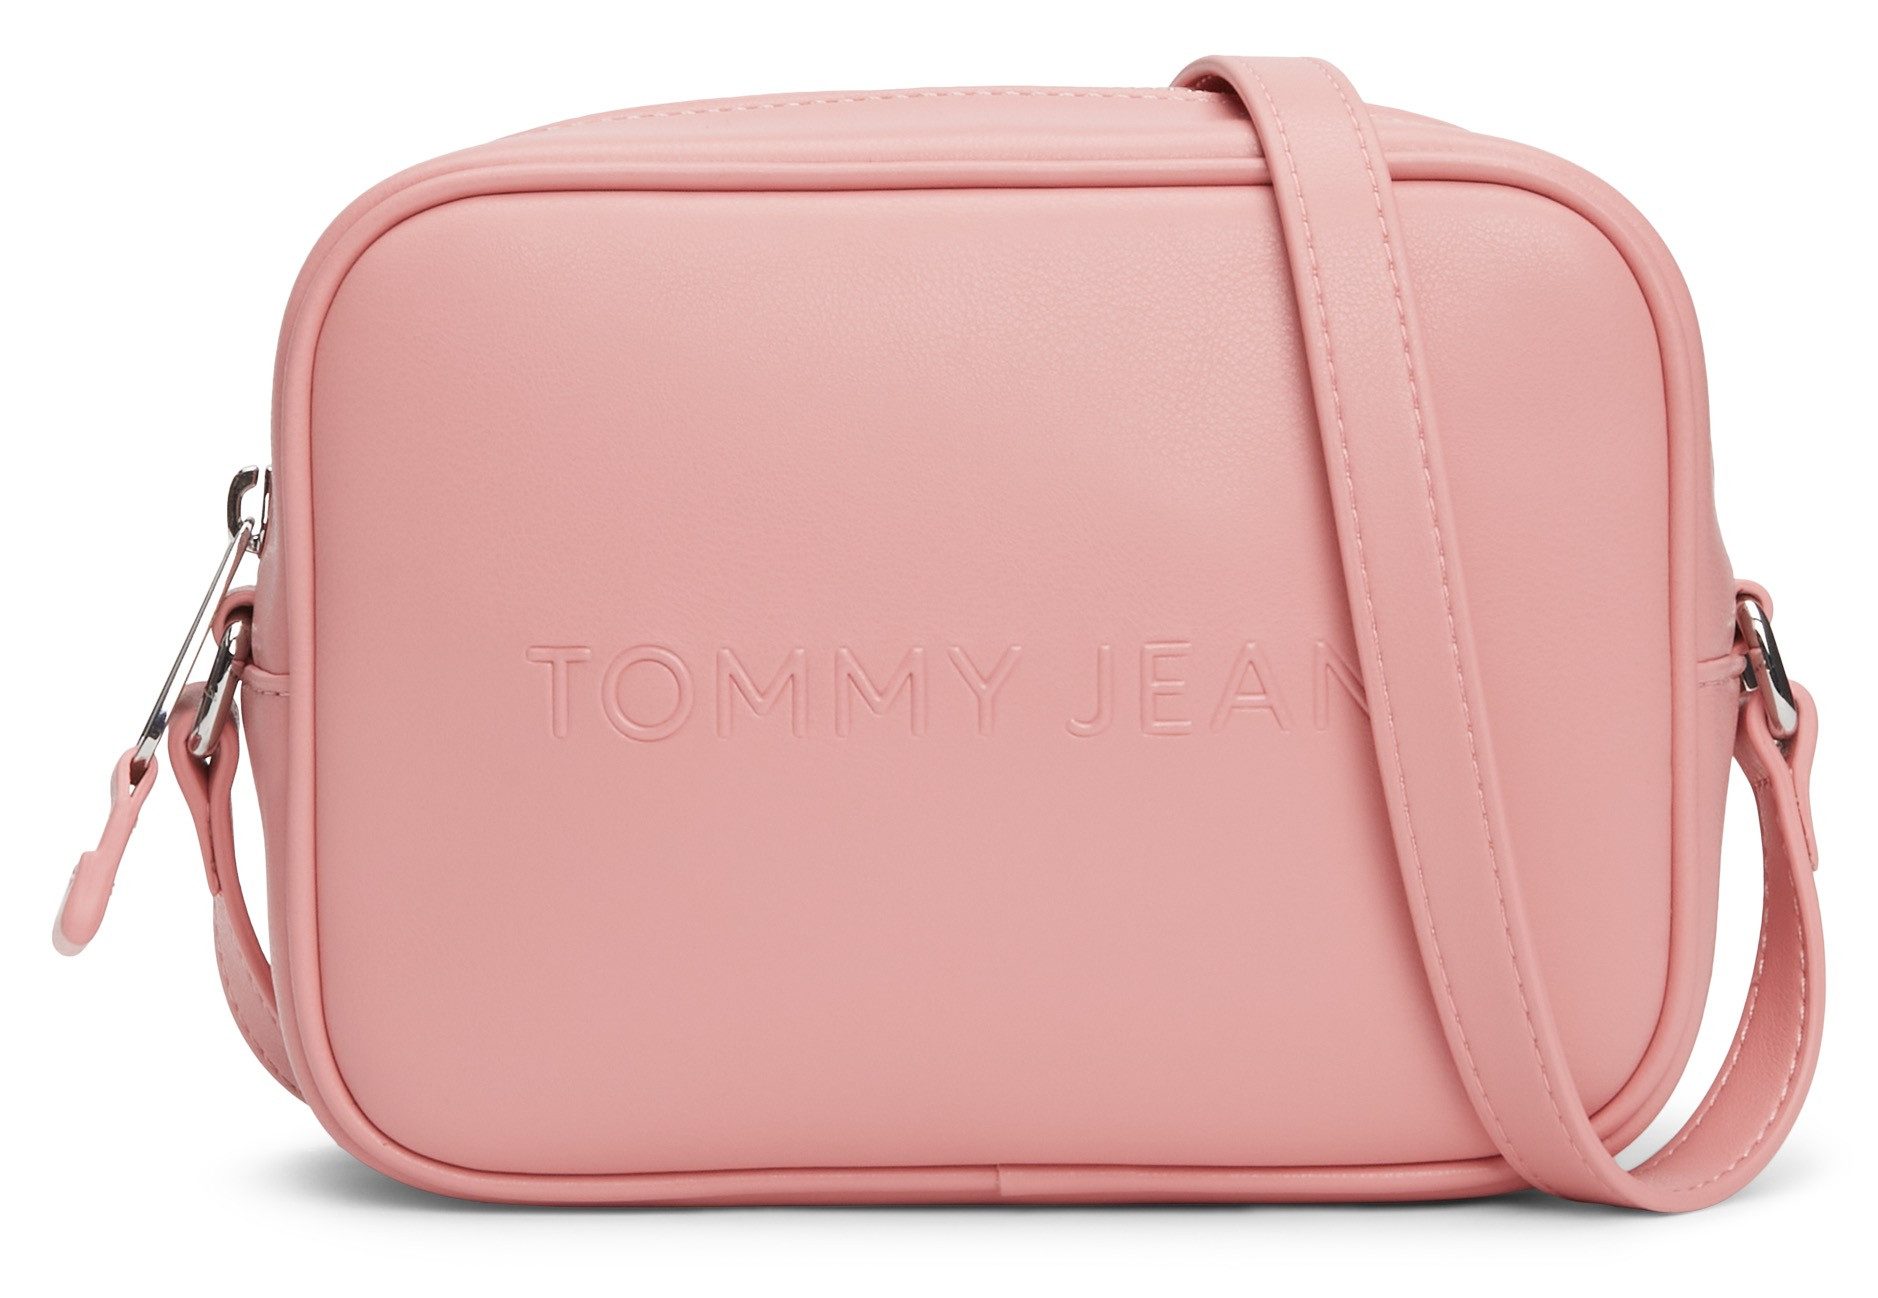 Tommy Jeans Mini Bag, Handtasche Damen Umhängetasche Tasche Damen Schultertasche